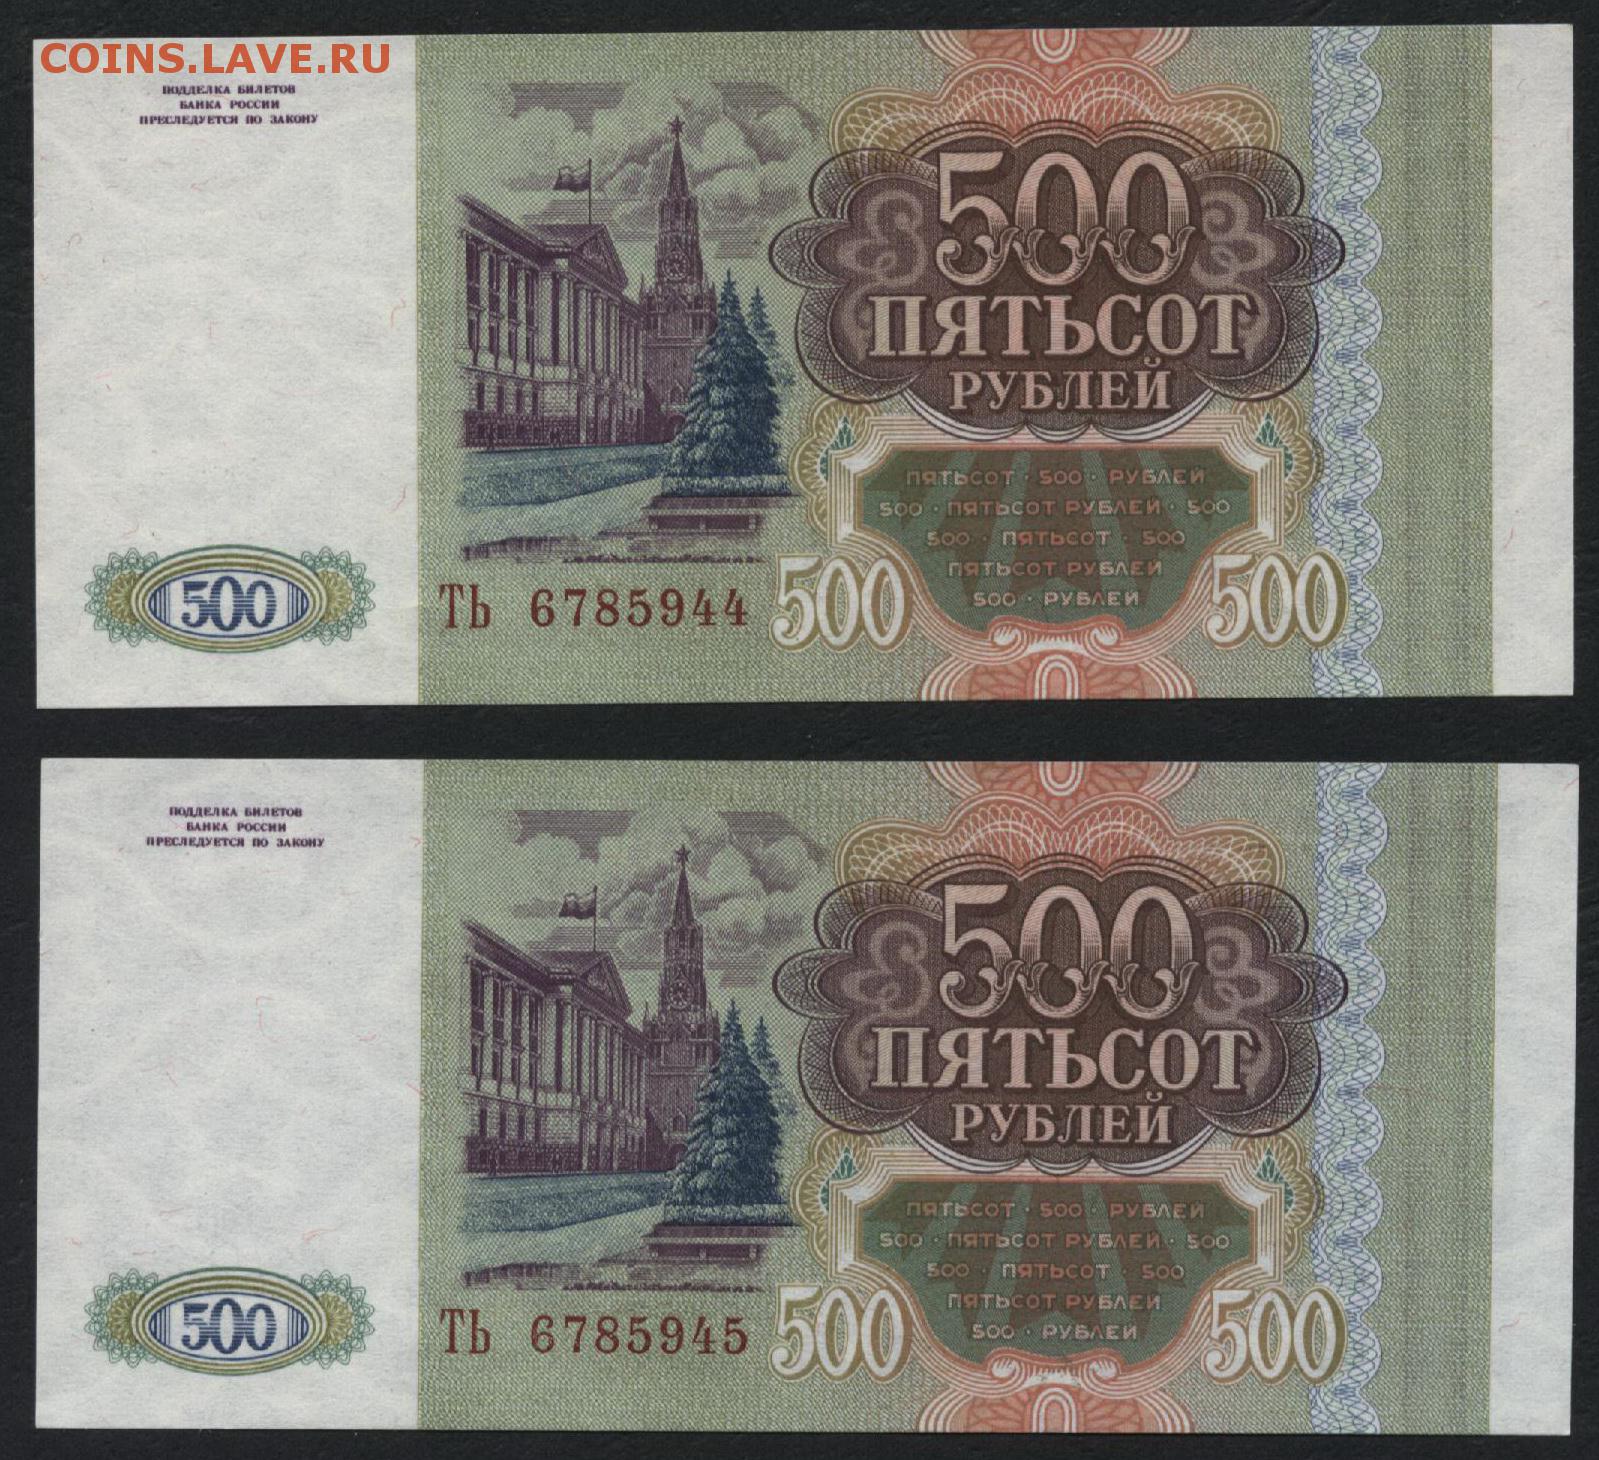 9 500 в рублях. 500 Рублей. 500 Рублей 1993. Пятьсот рублей 1993. 500 Рублей 1993 года.